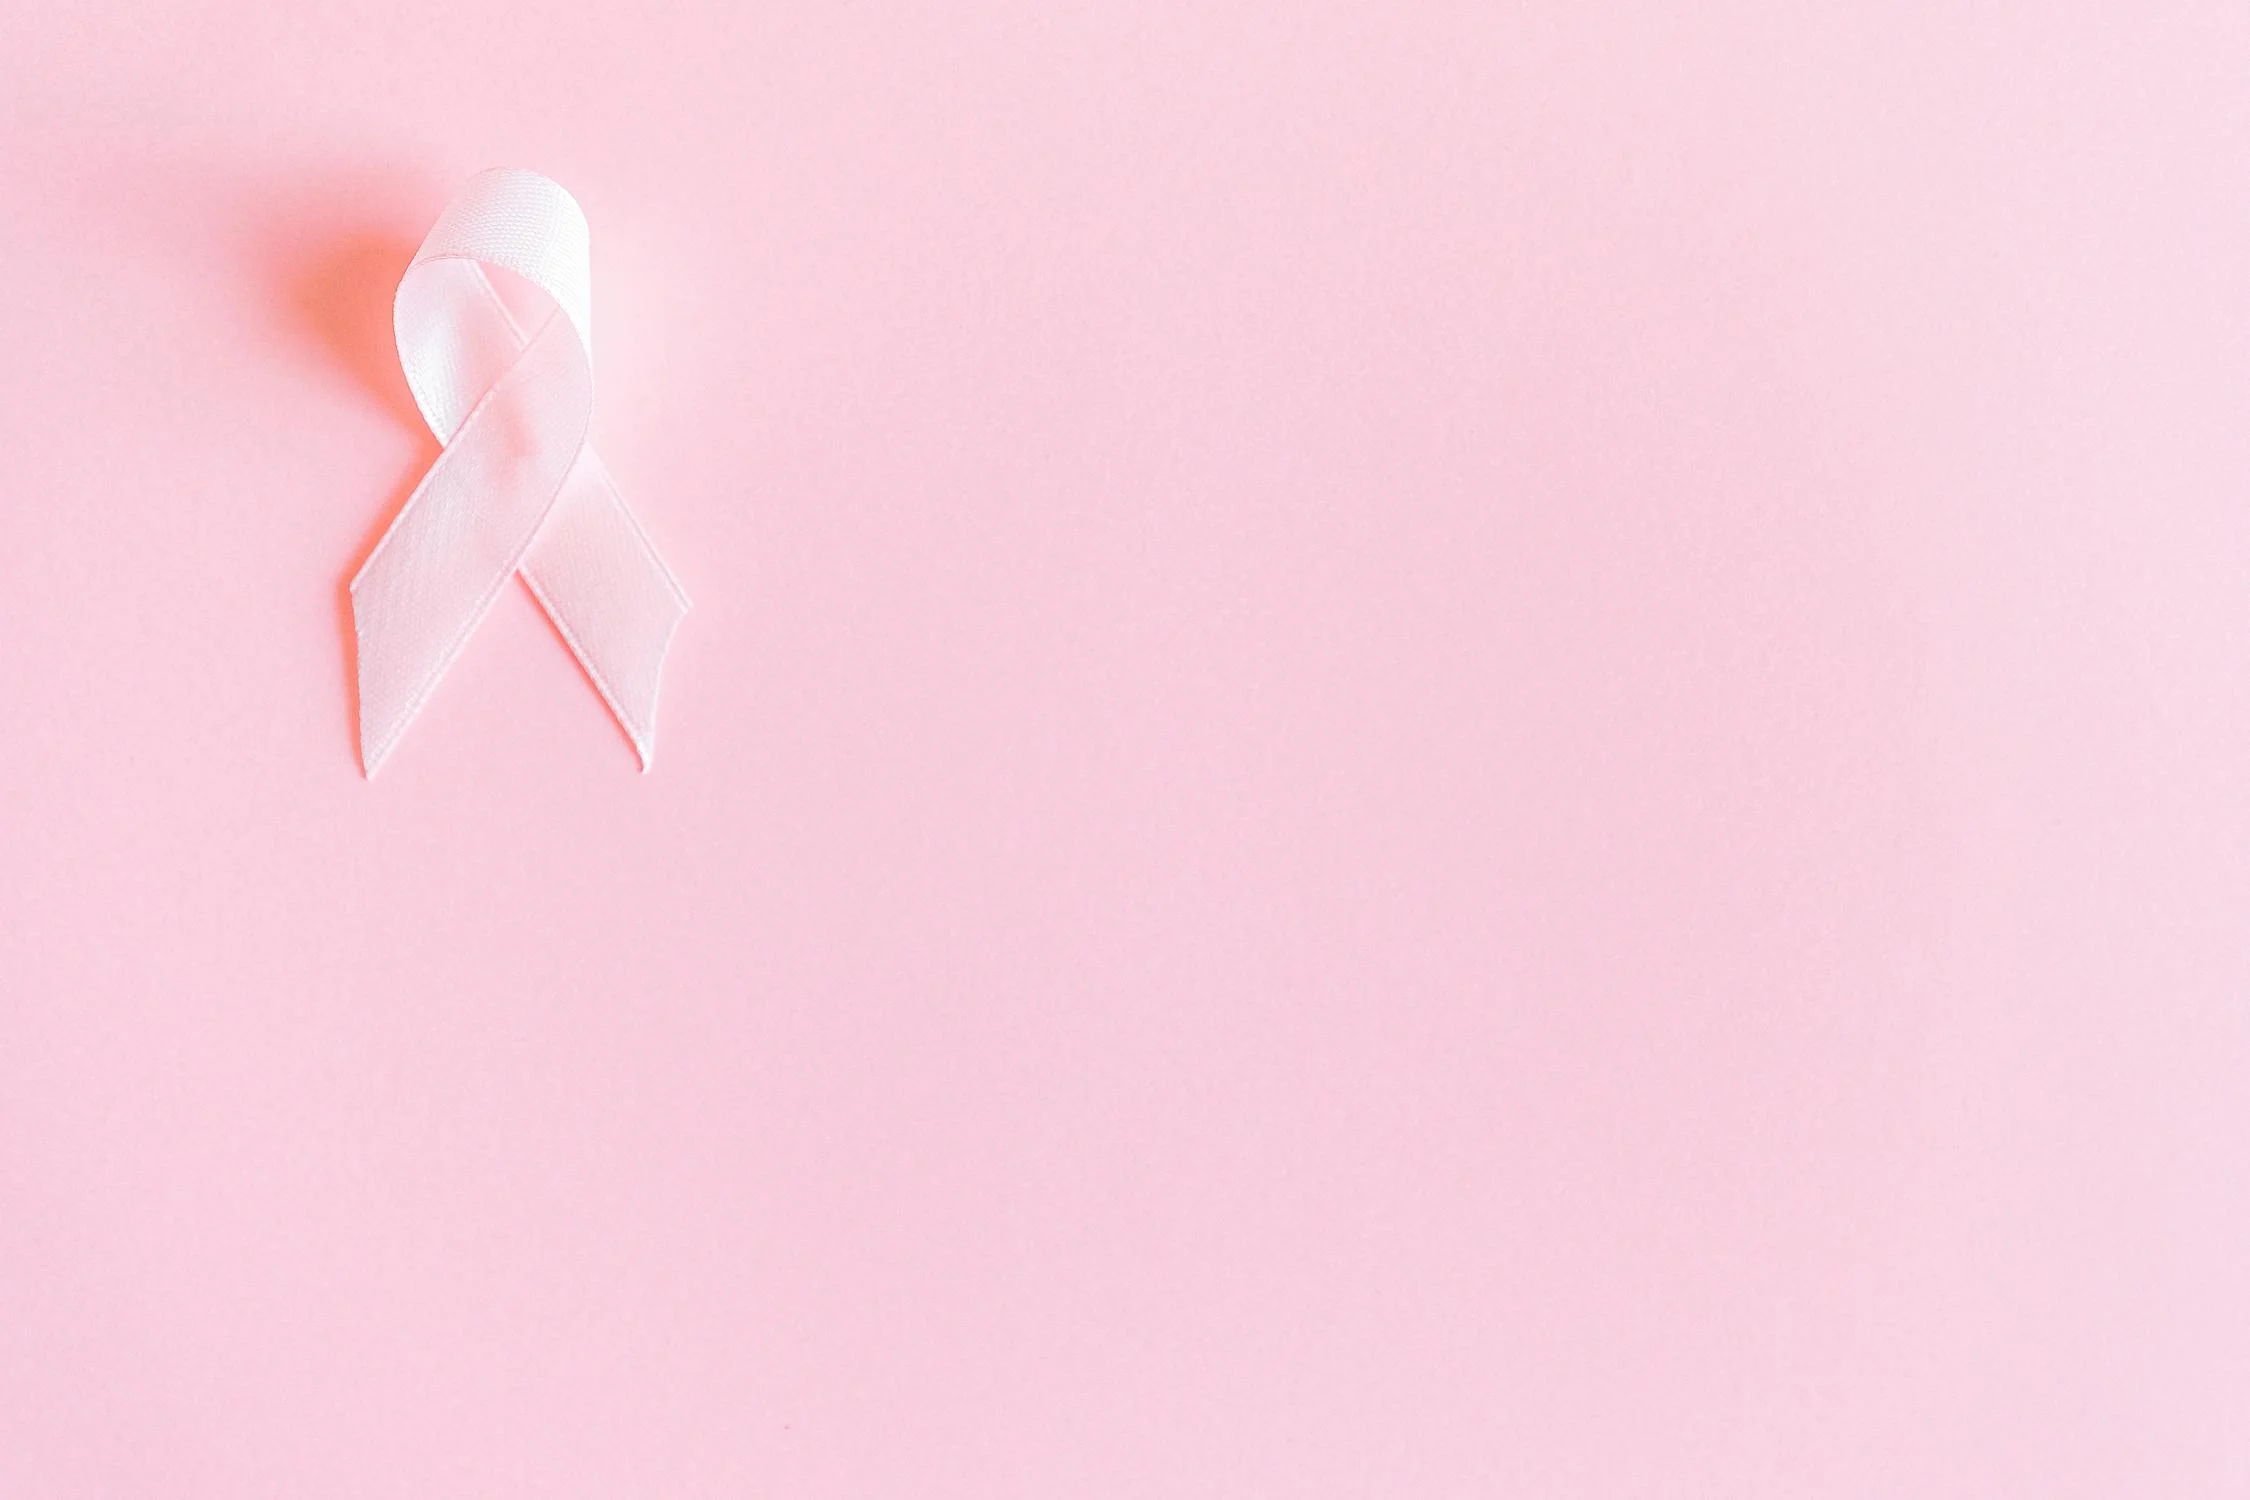 Átfogó kutatás a mellrák ellen – most minden érintett megoszthatja a tapasztalatait